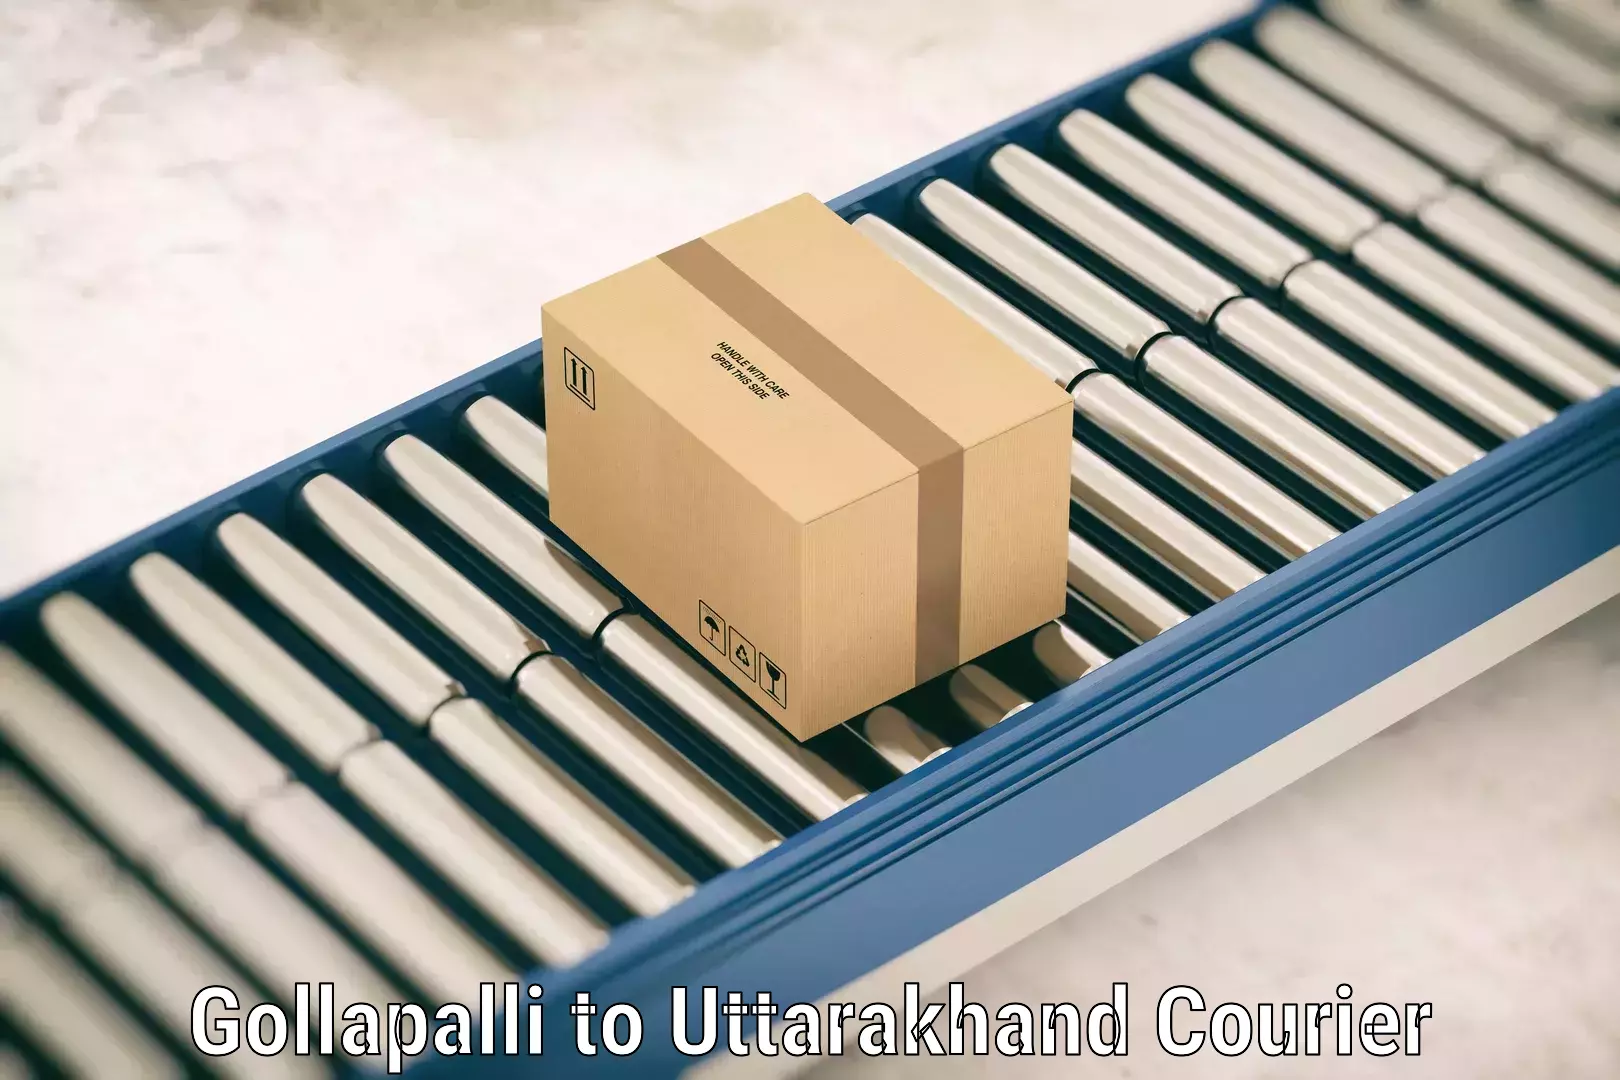 Luggage forwarding service Gollapalli to Gopeshwar